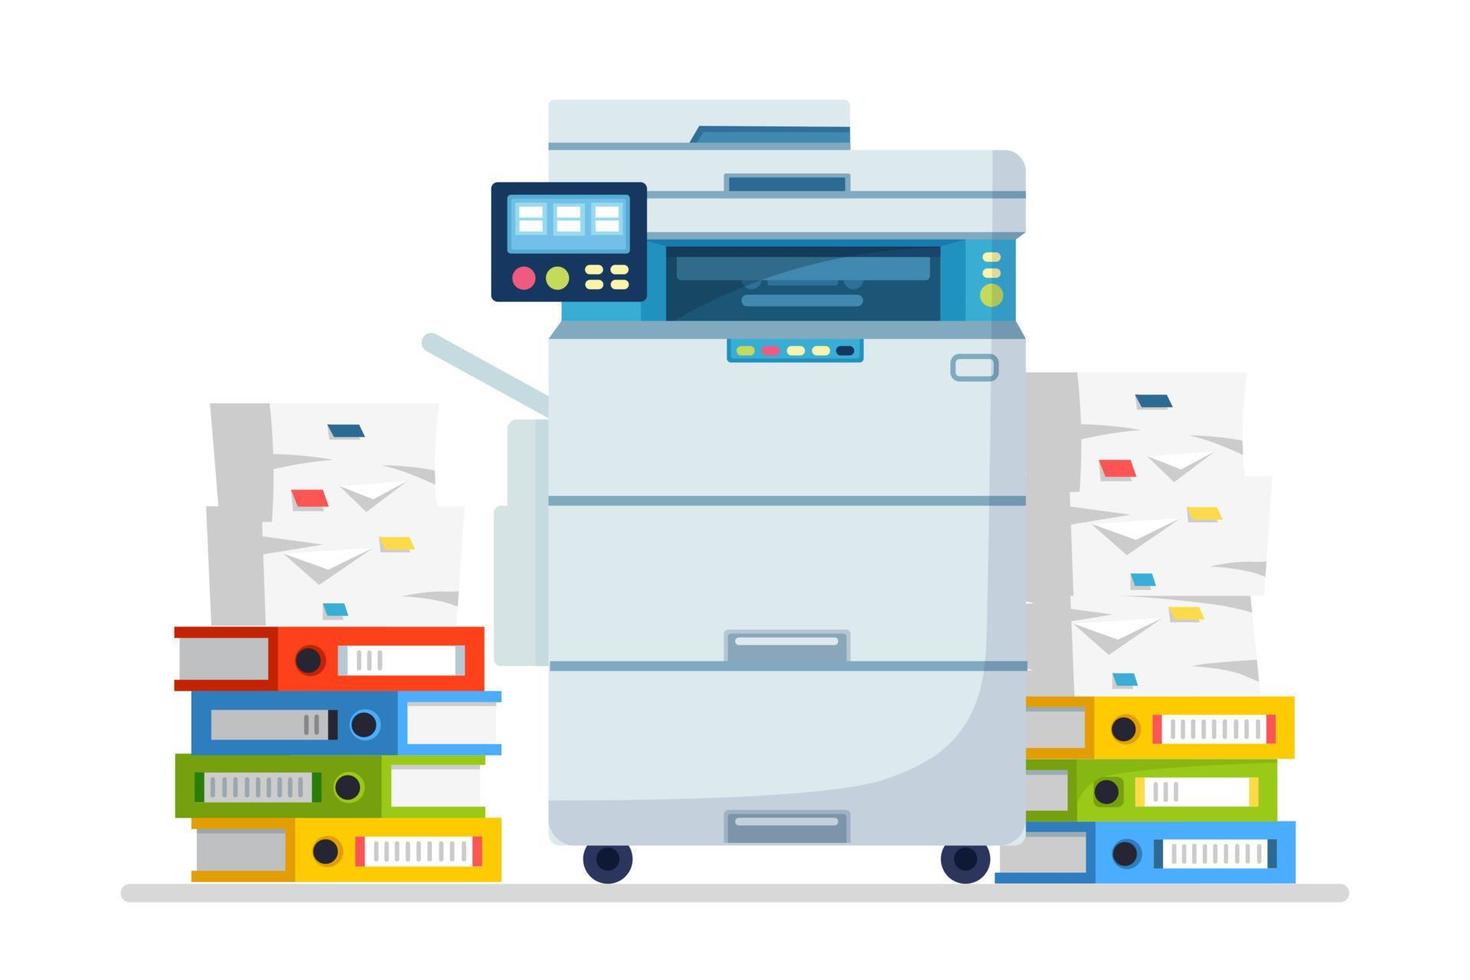 impresora, máquina de oficina con papel, pila de documentos. escáner, equipo de copia. papeleo. dispositivo multifunción. diseño de dibujos animados de vectores